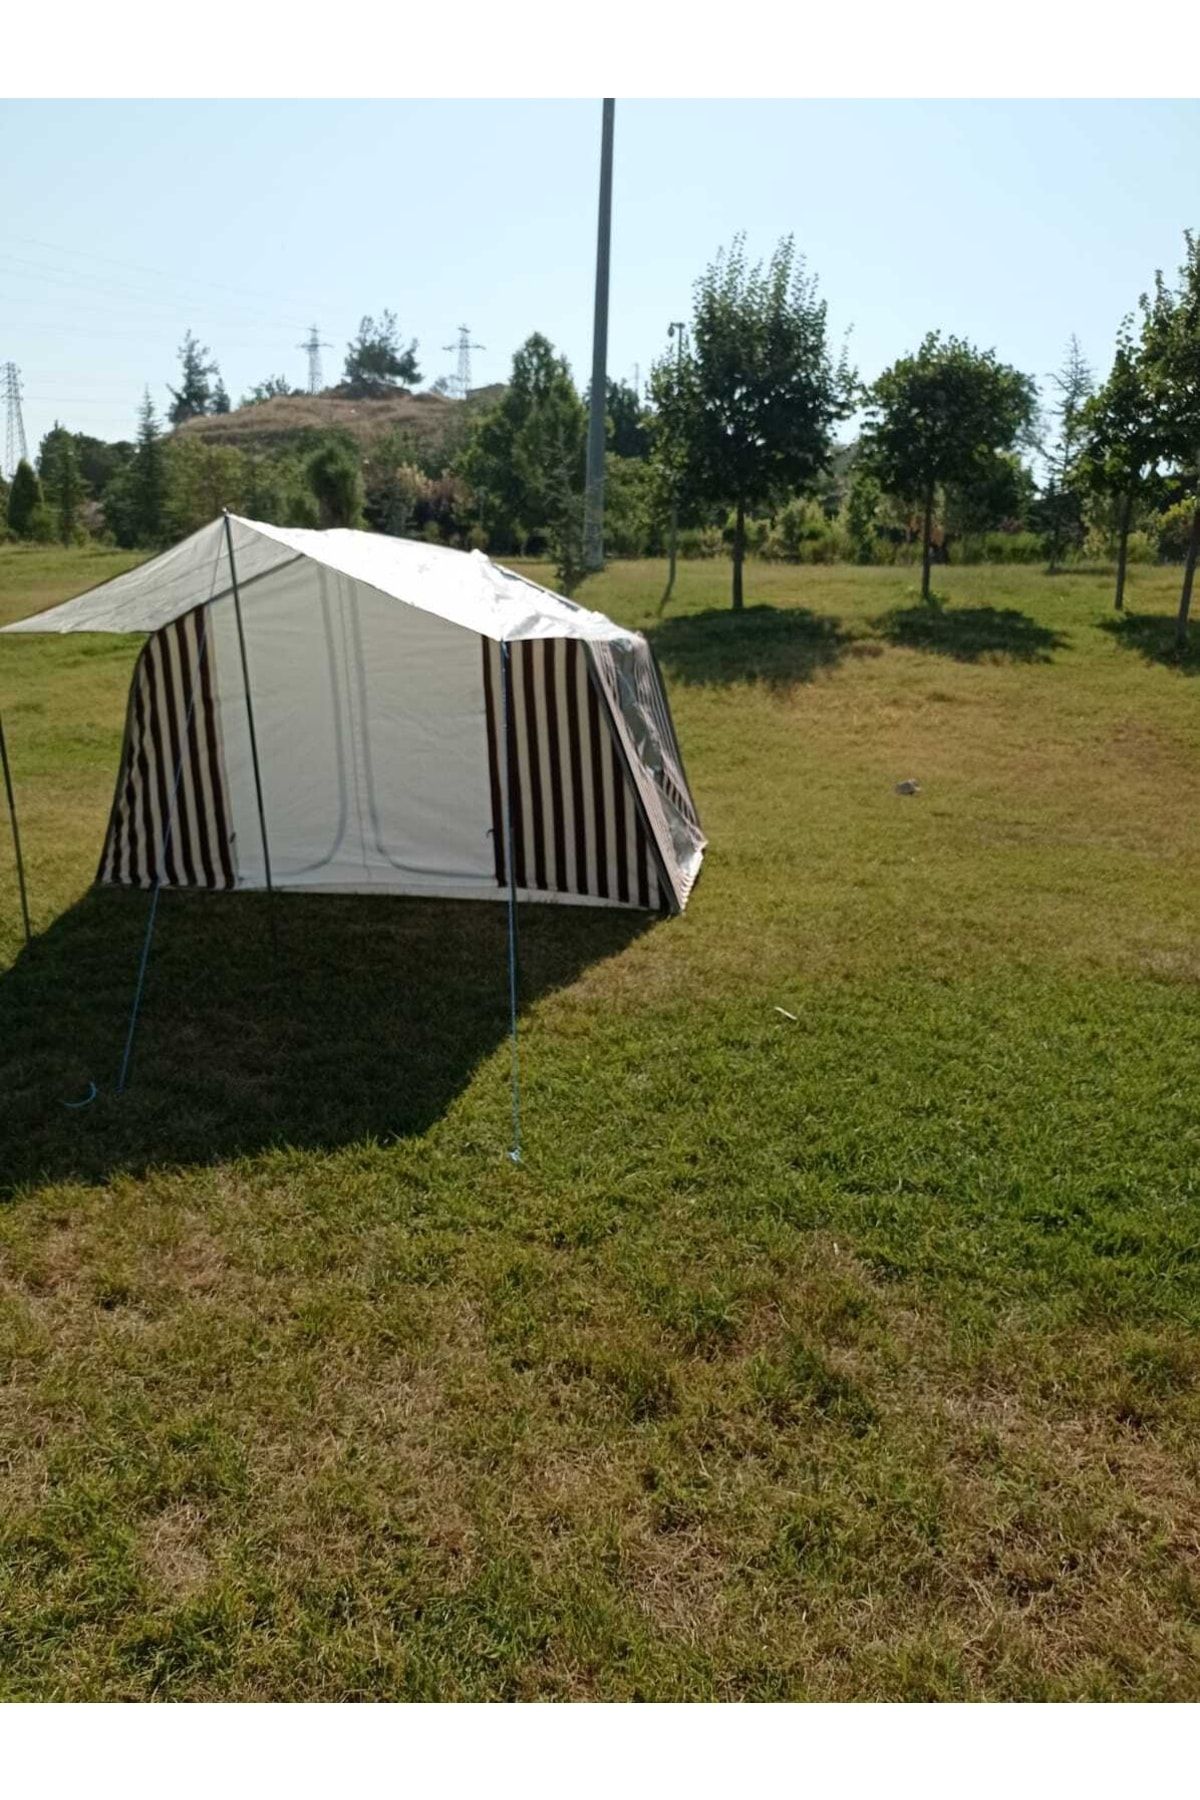 yamaç çadır 2 Odalı Kapıda Sineklikli Kaliteli Kamp Çadırı